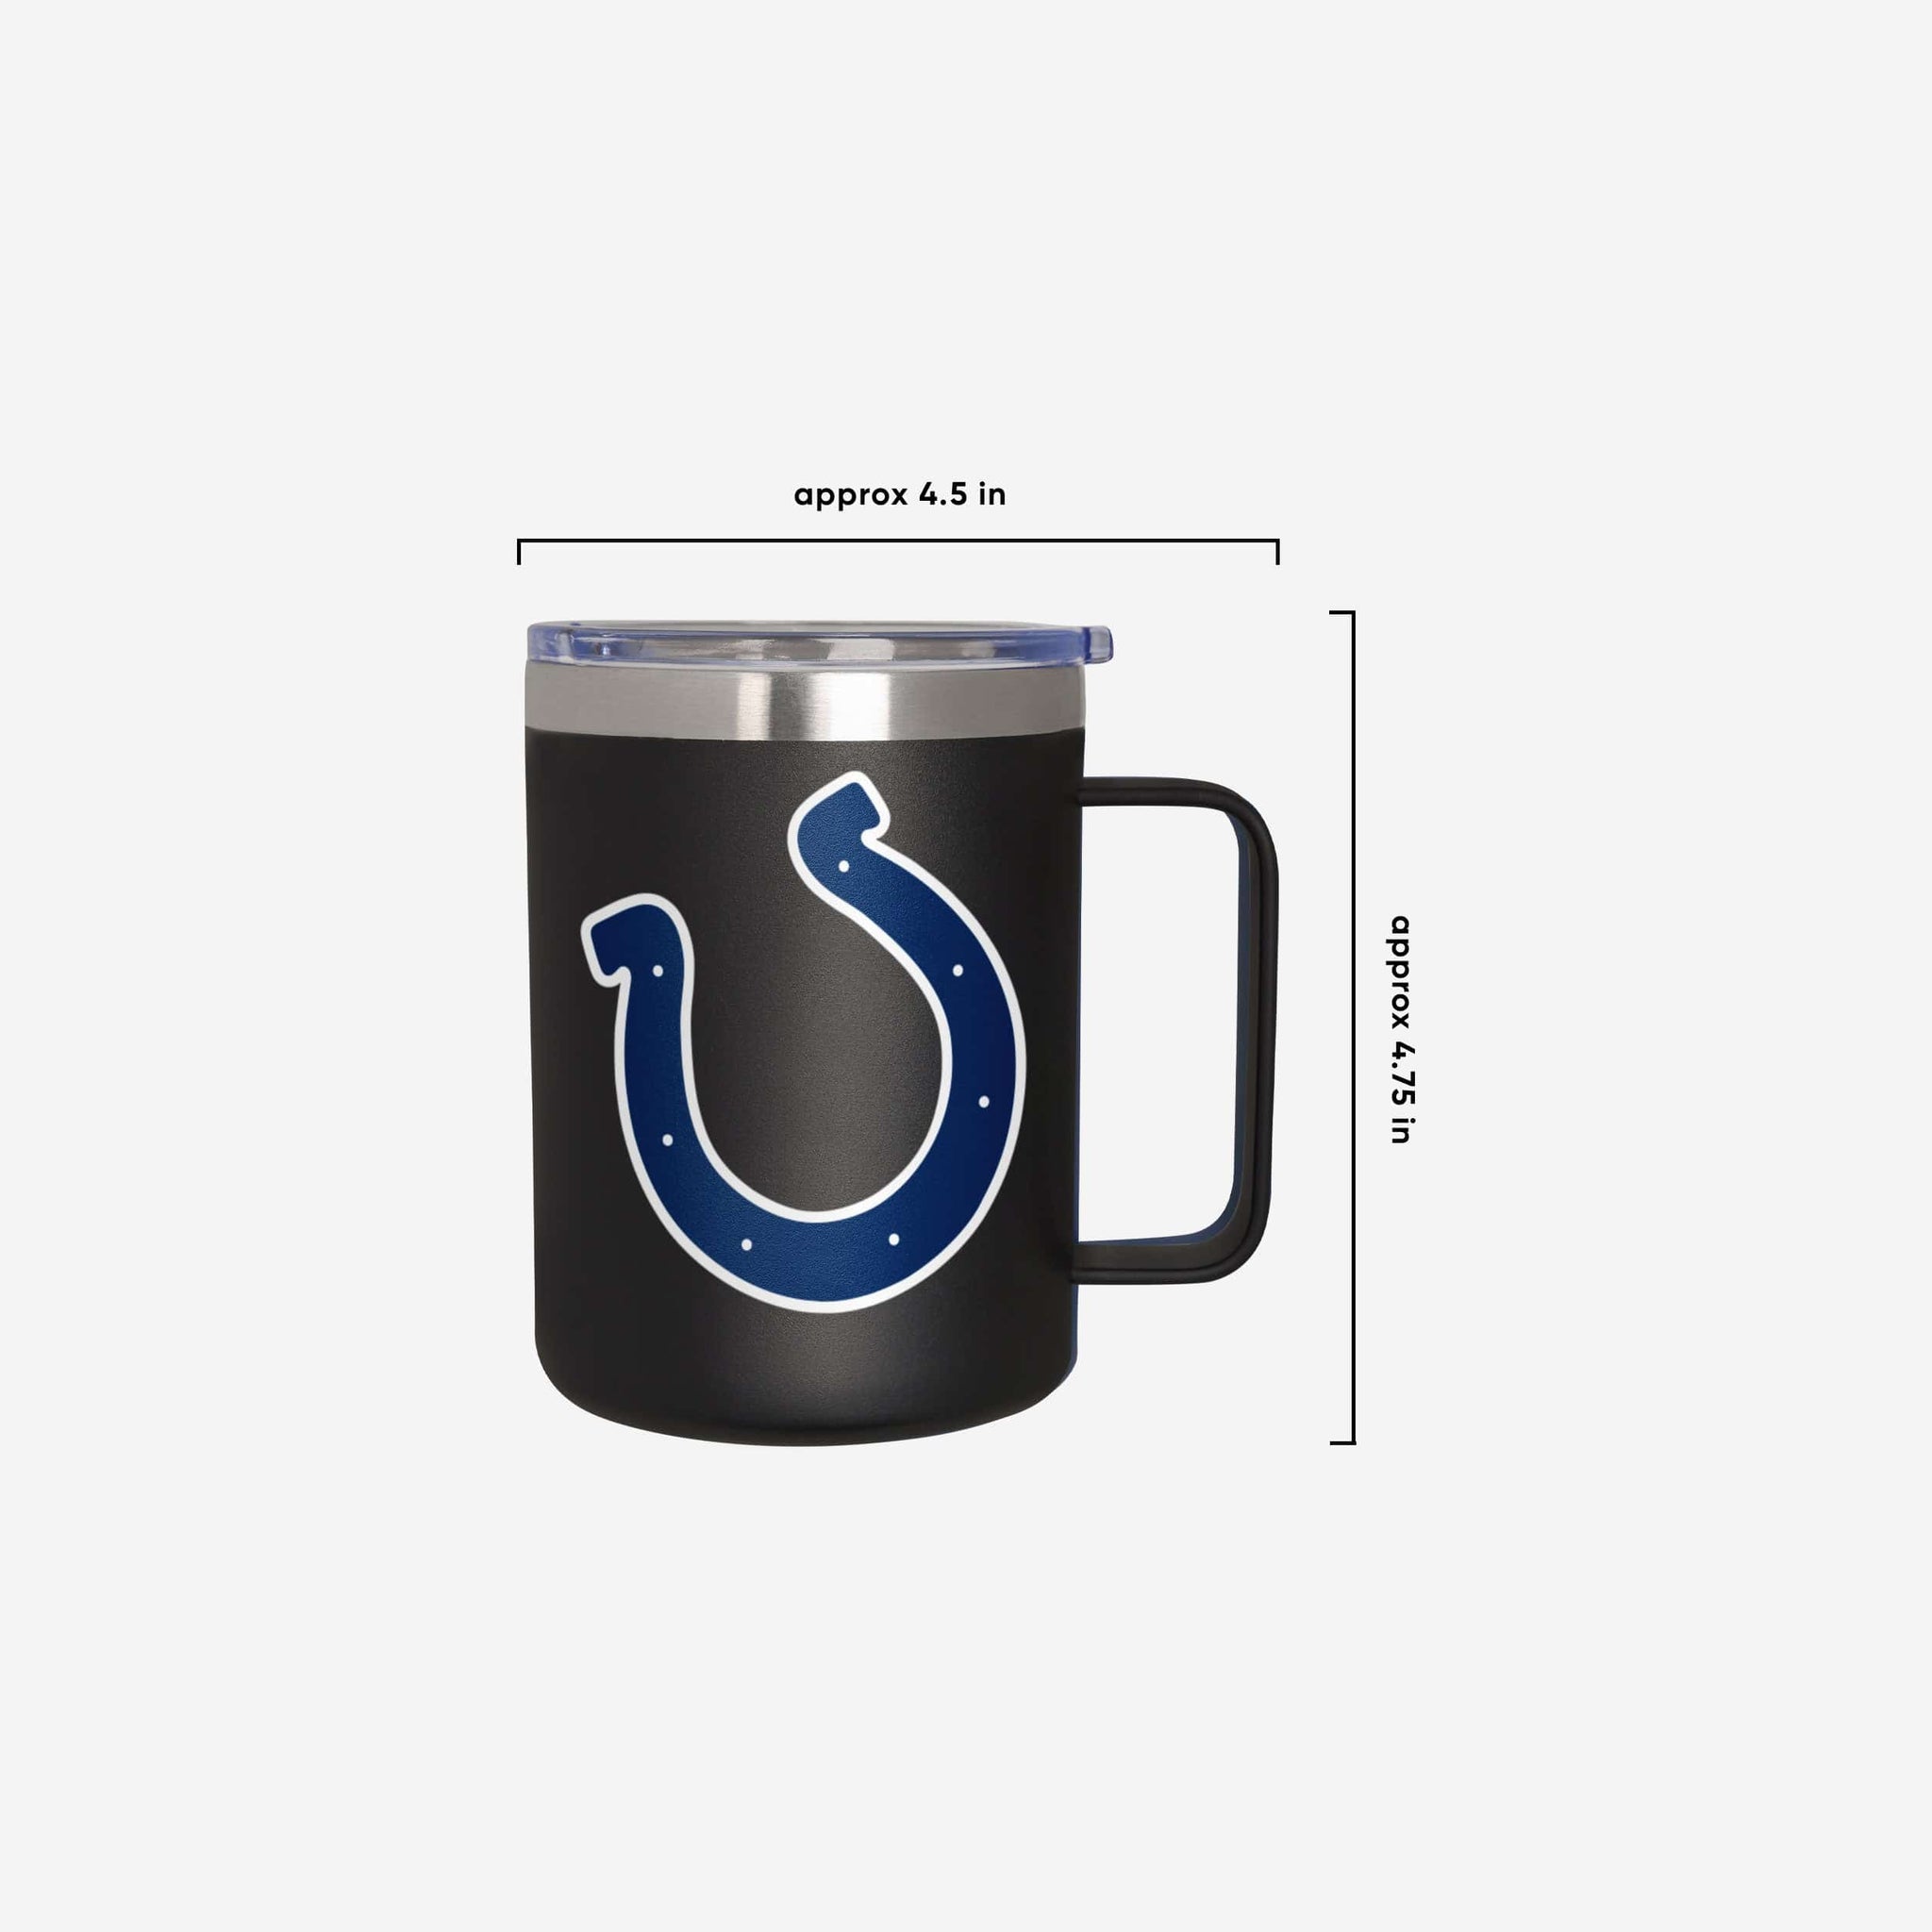 Indianapolis Colts 15oz. Team Lineup Mug